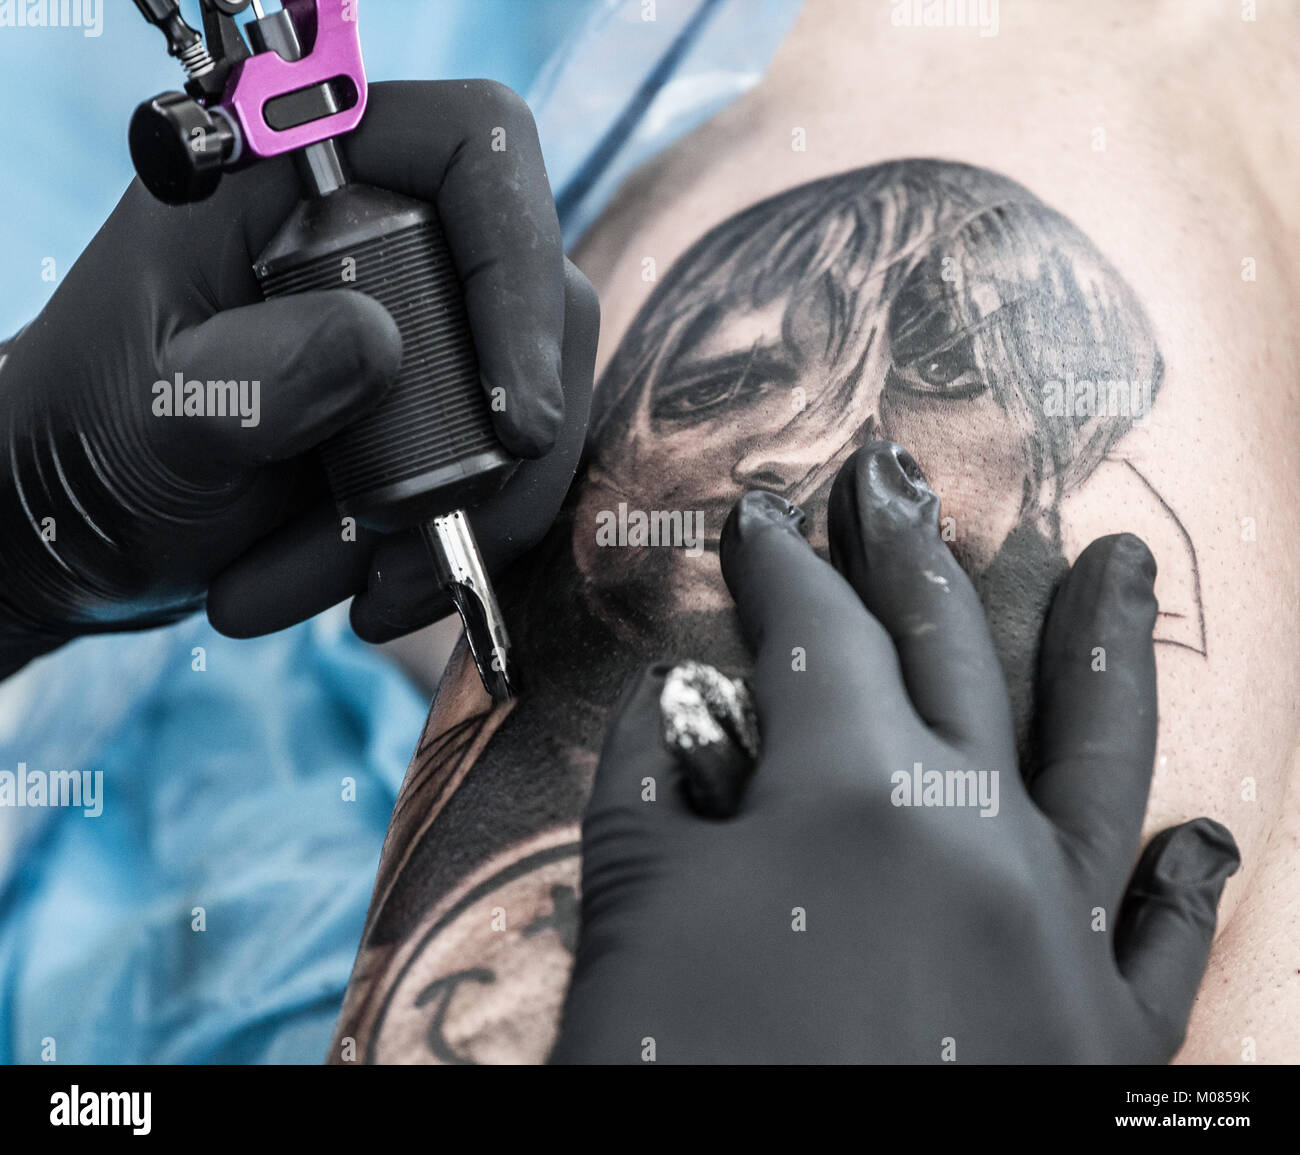 kurt cobains daughter tattoos